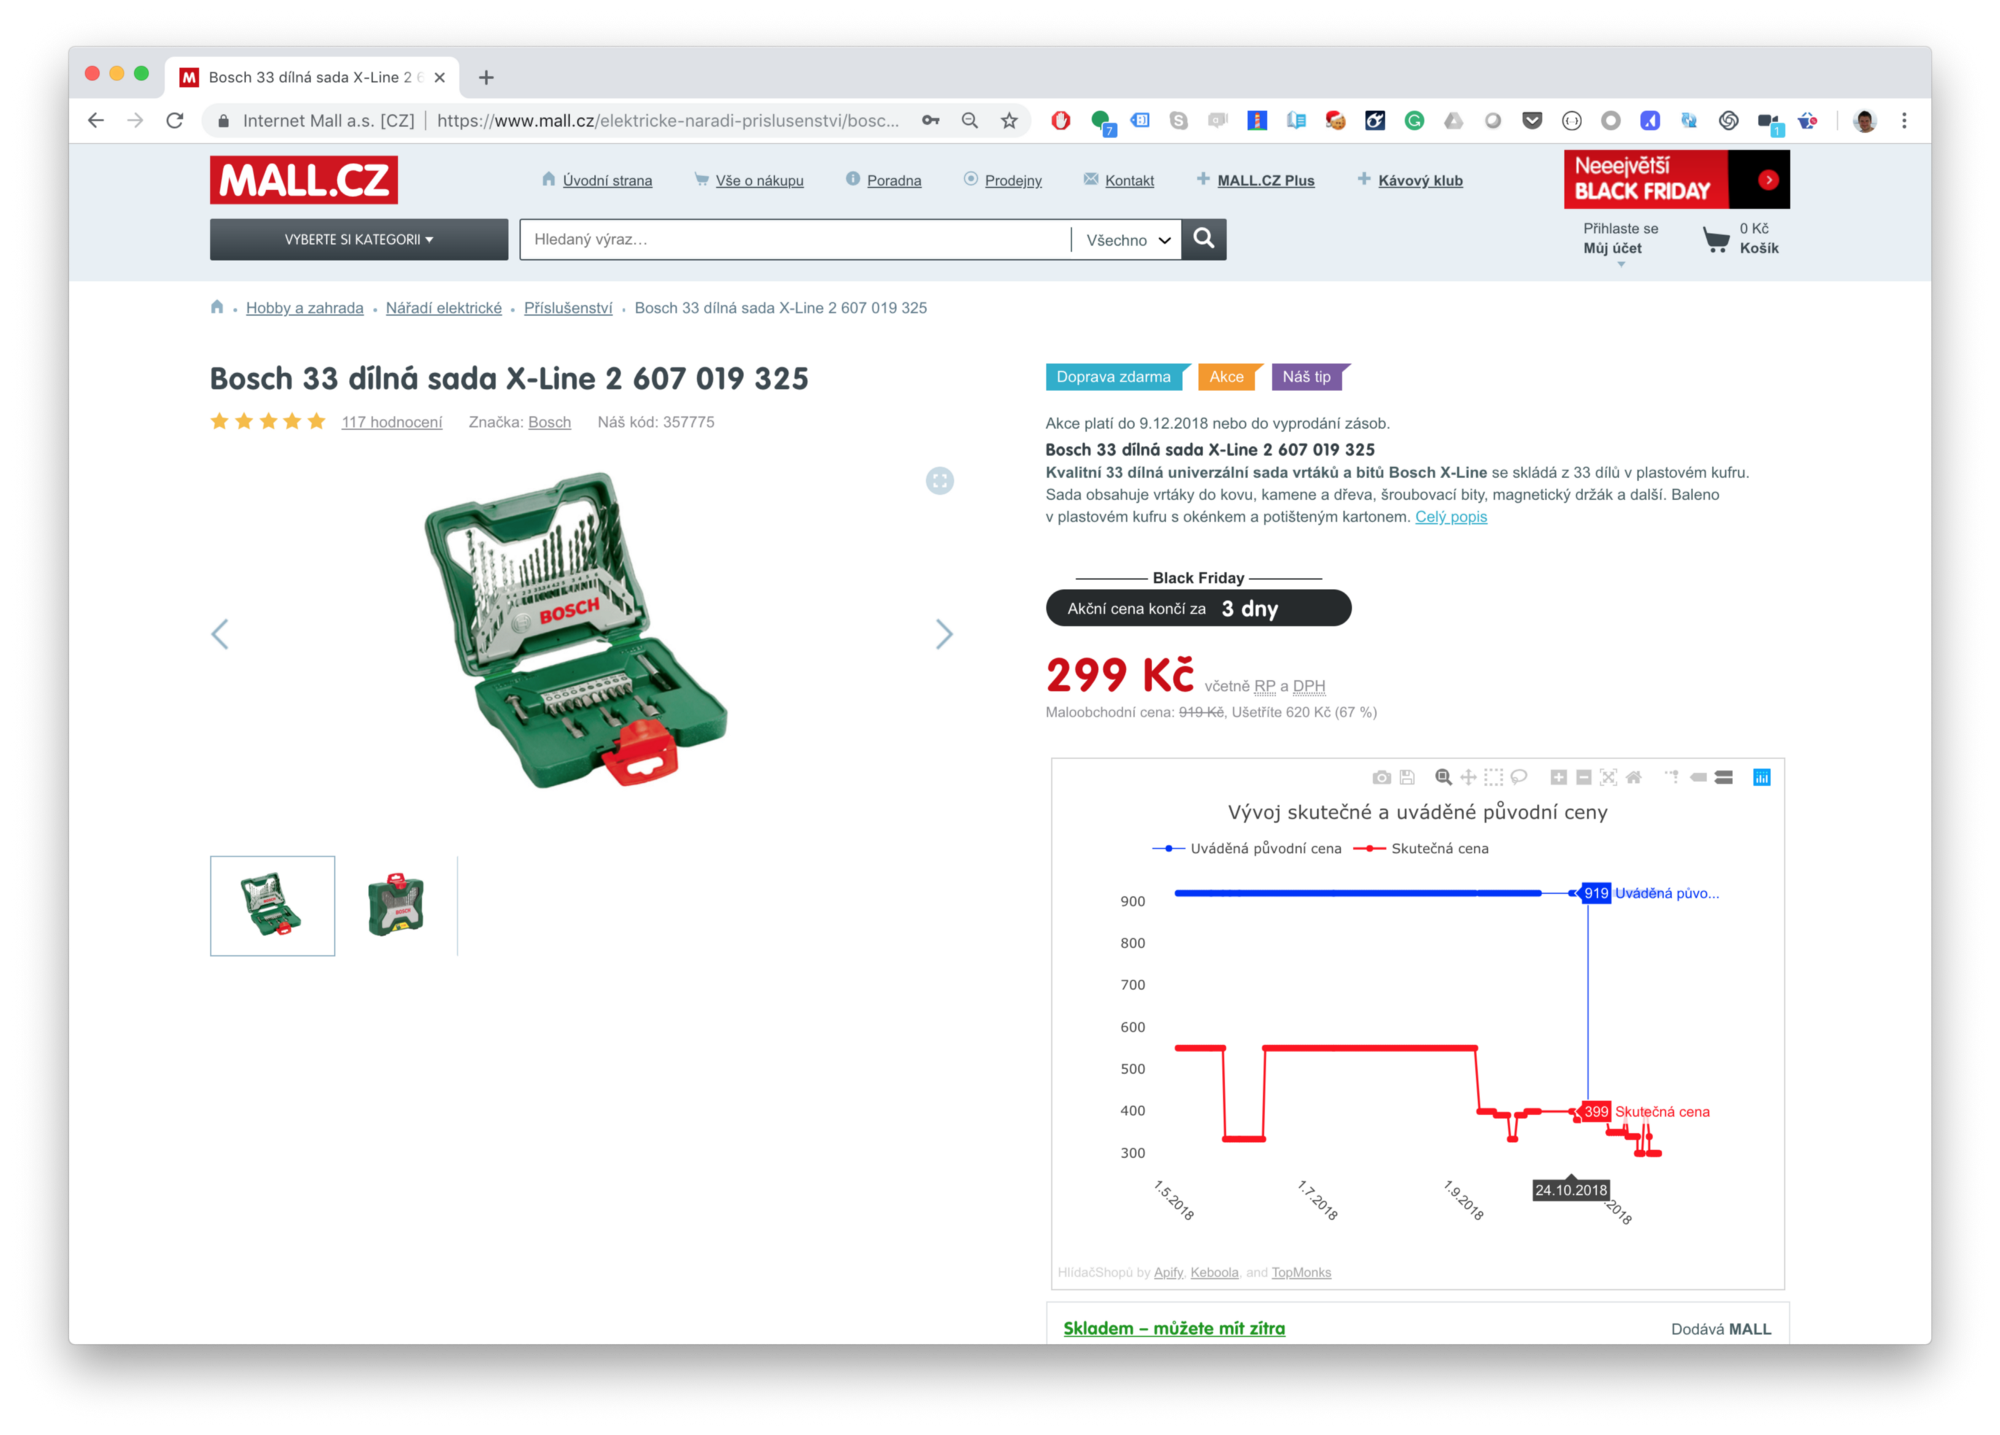 snímek obrazovky elektrického nářadí ve výprodeji na webu mall.cz z 919 Kč na 299 Kč